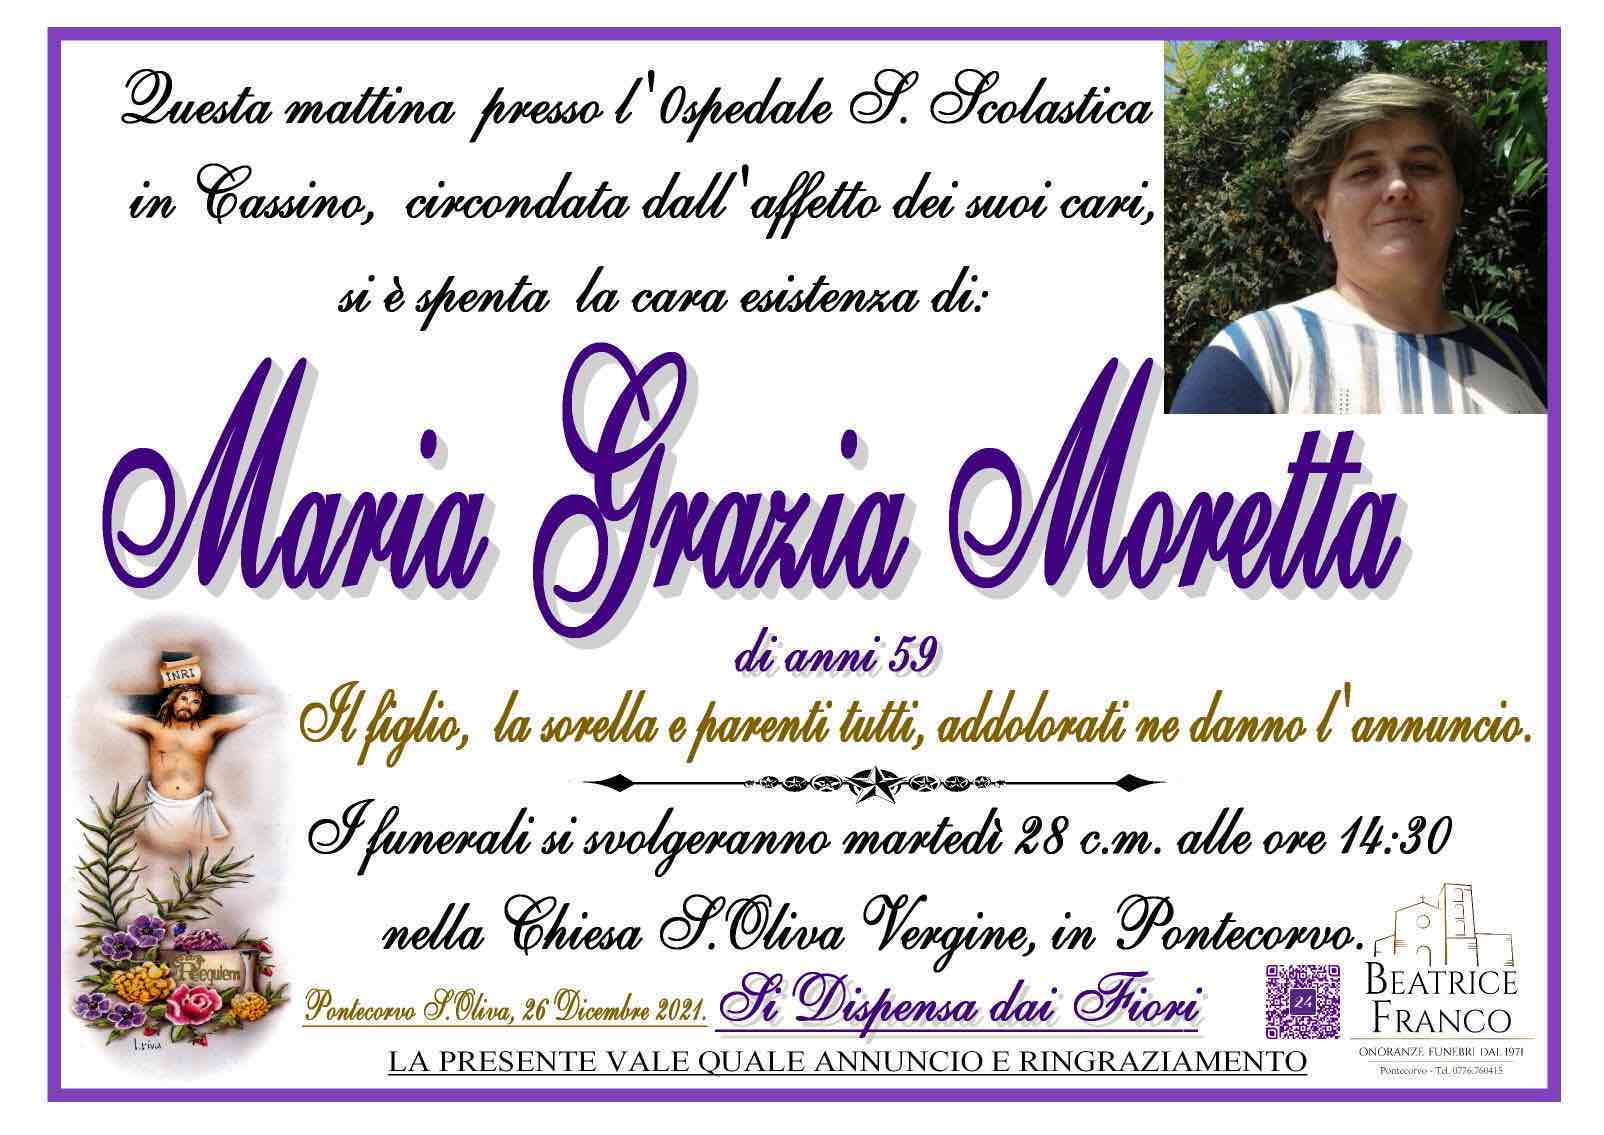 Maria Grazia Moretta